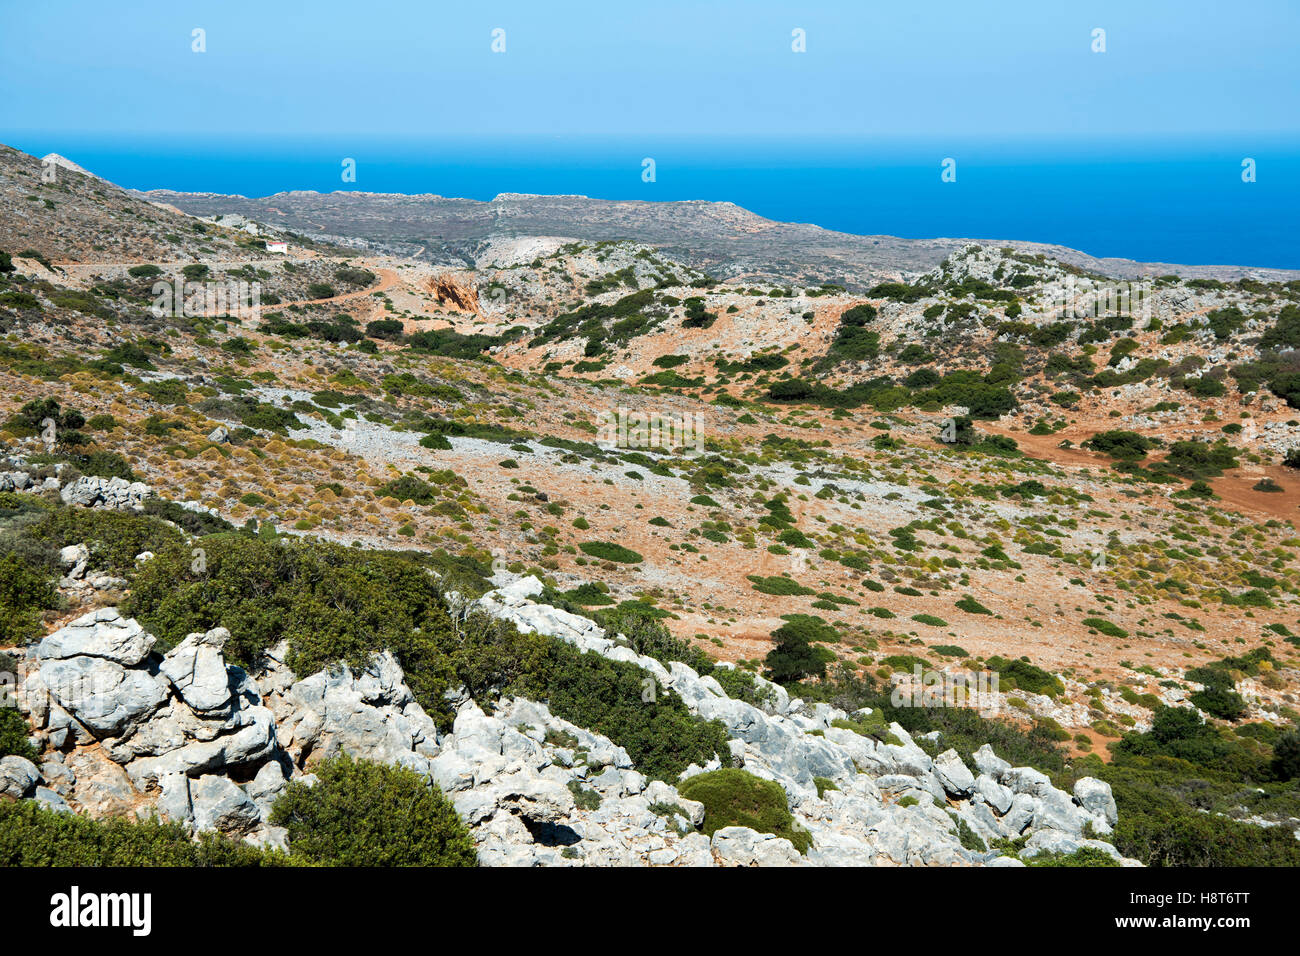 Griechenland, Kreta, Halbinsel Rodopou (Rodopos), Landschaft an der Strasse vom Dorf Rodopos zur Ausgrabung von Diktina Stock Photo